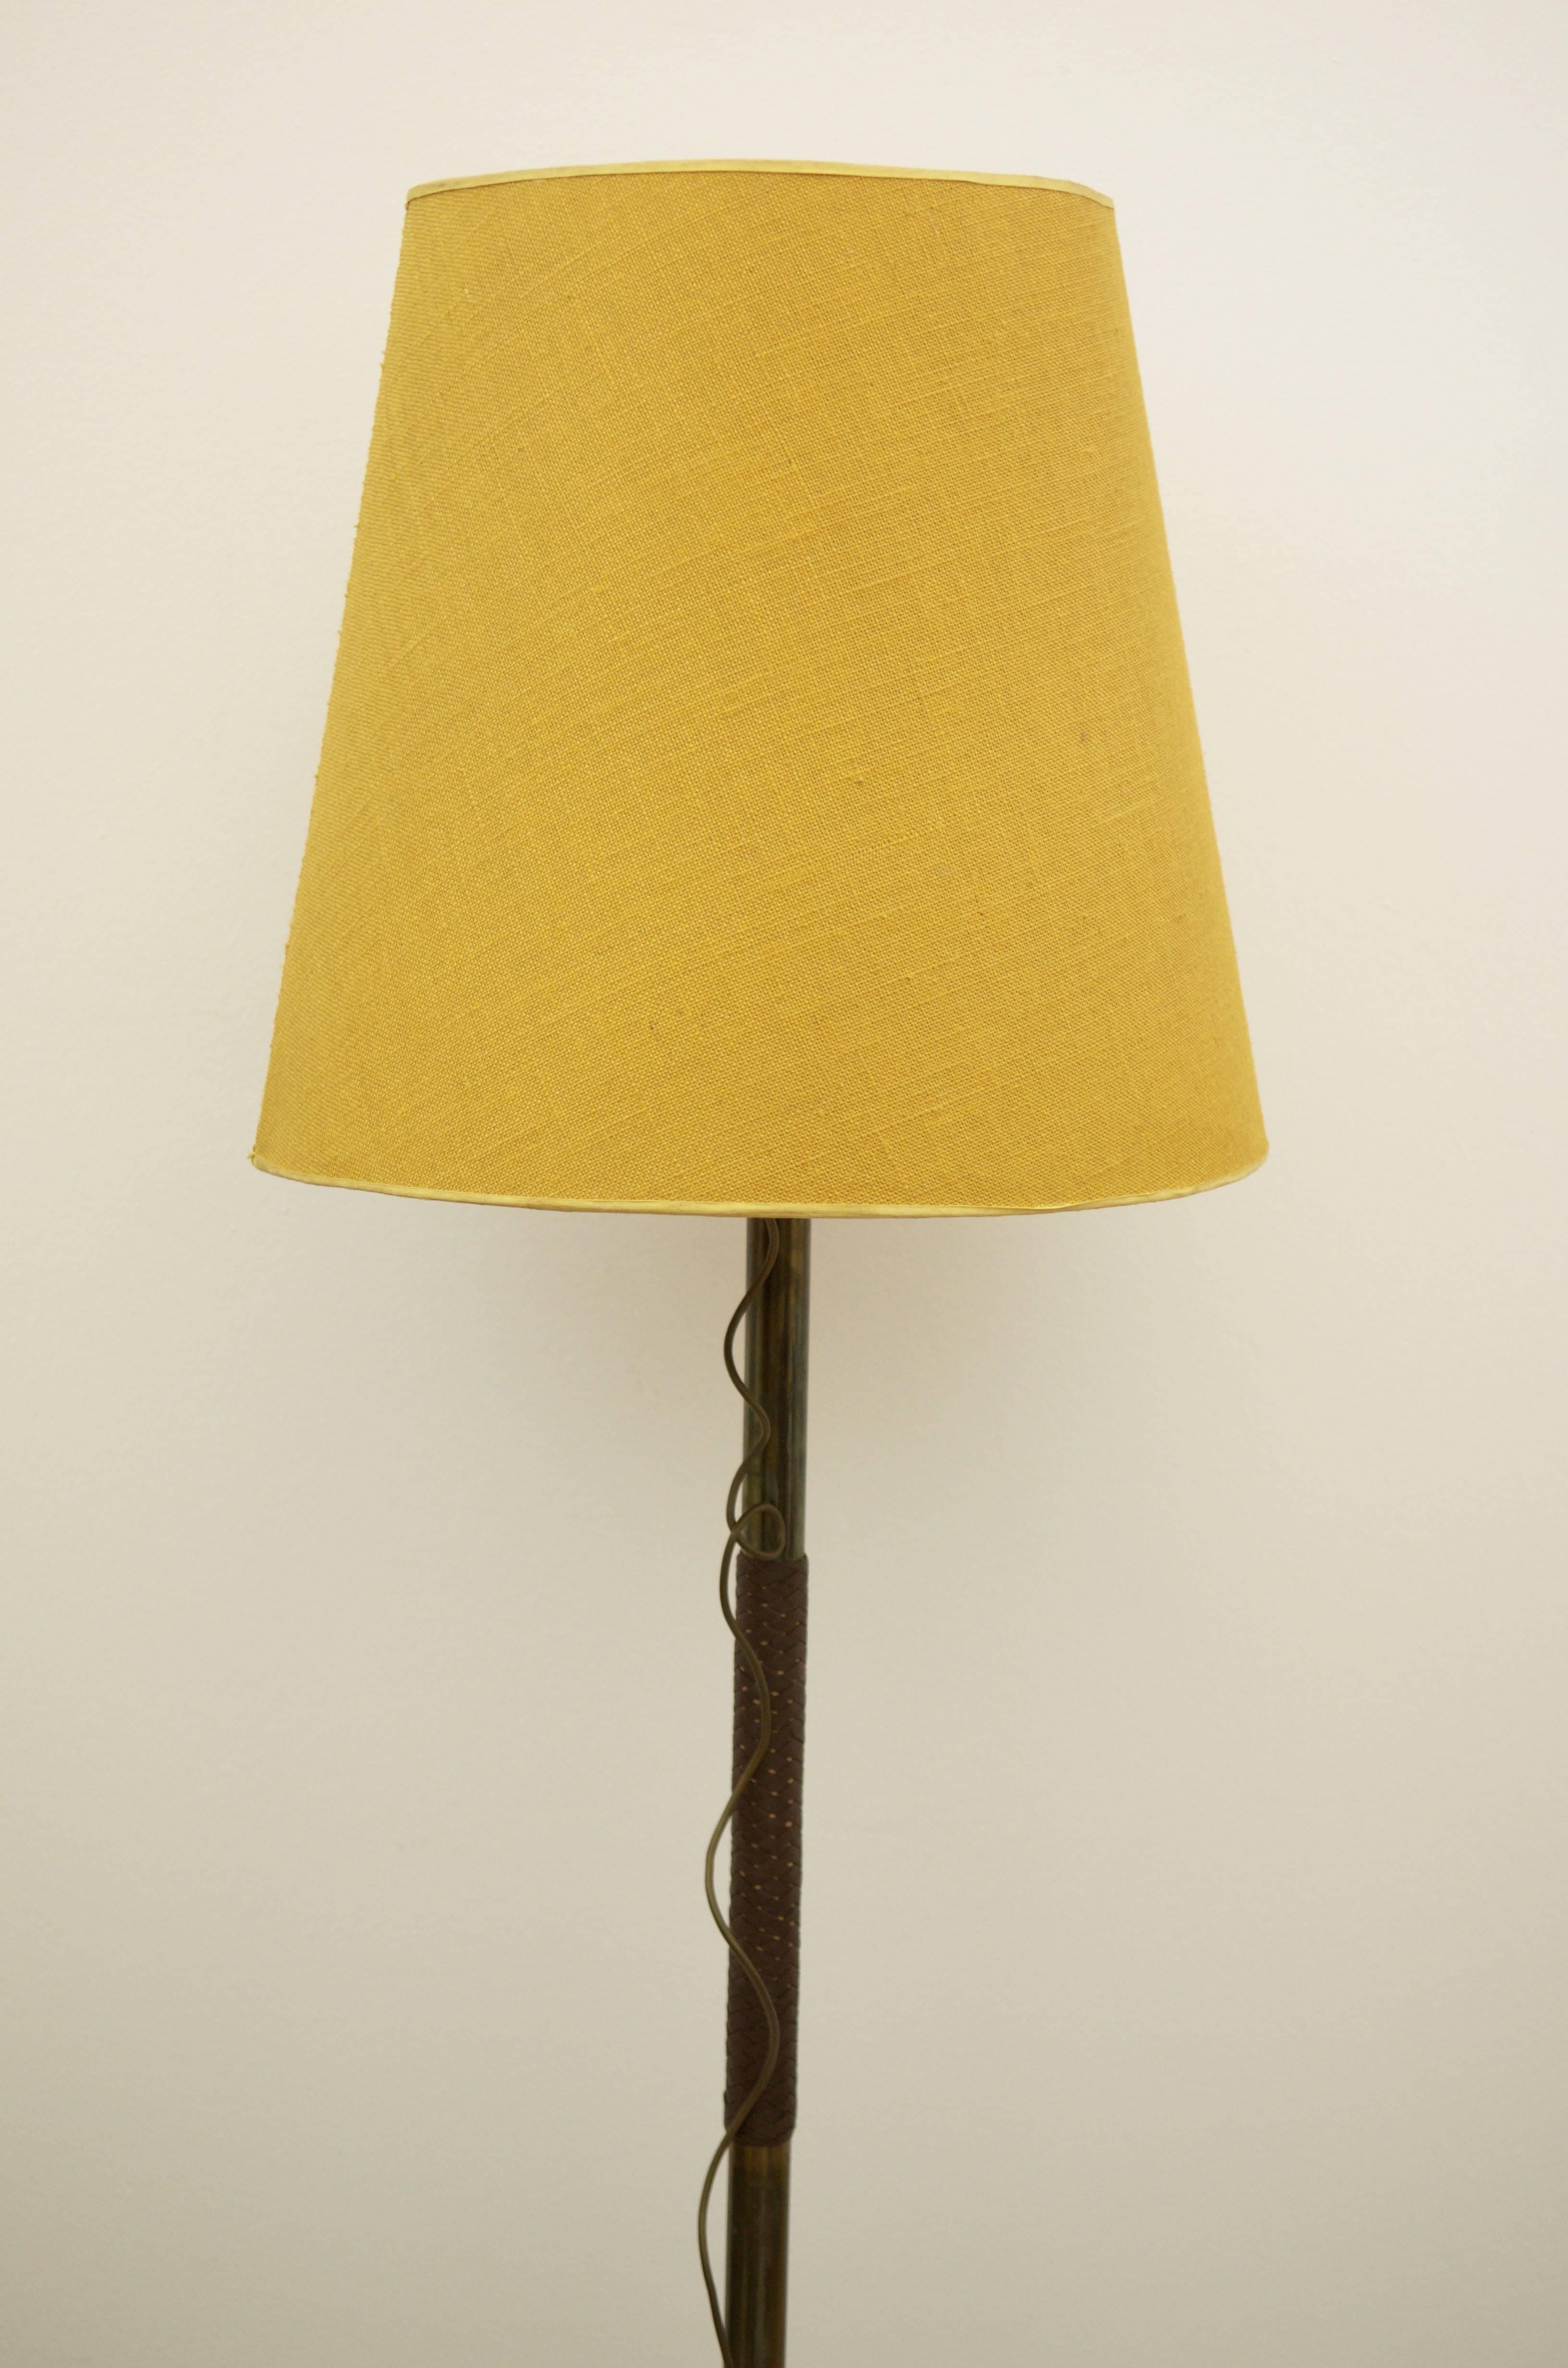 Lampe aus Messing mit zwei E27-Glühbirnen und Schalter mit langem Kabel.
In der Mitte des Lampenbeins aus Messing ist ein Teil des Beins mit Leder umflochten.
Lampenschirm aus Leinen, wahrscheinlich von J.T. Kalmar in den 1940er oder frühen 1950er